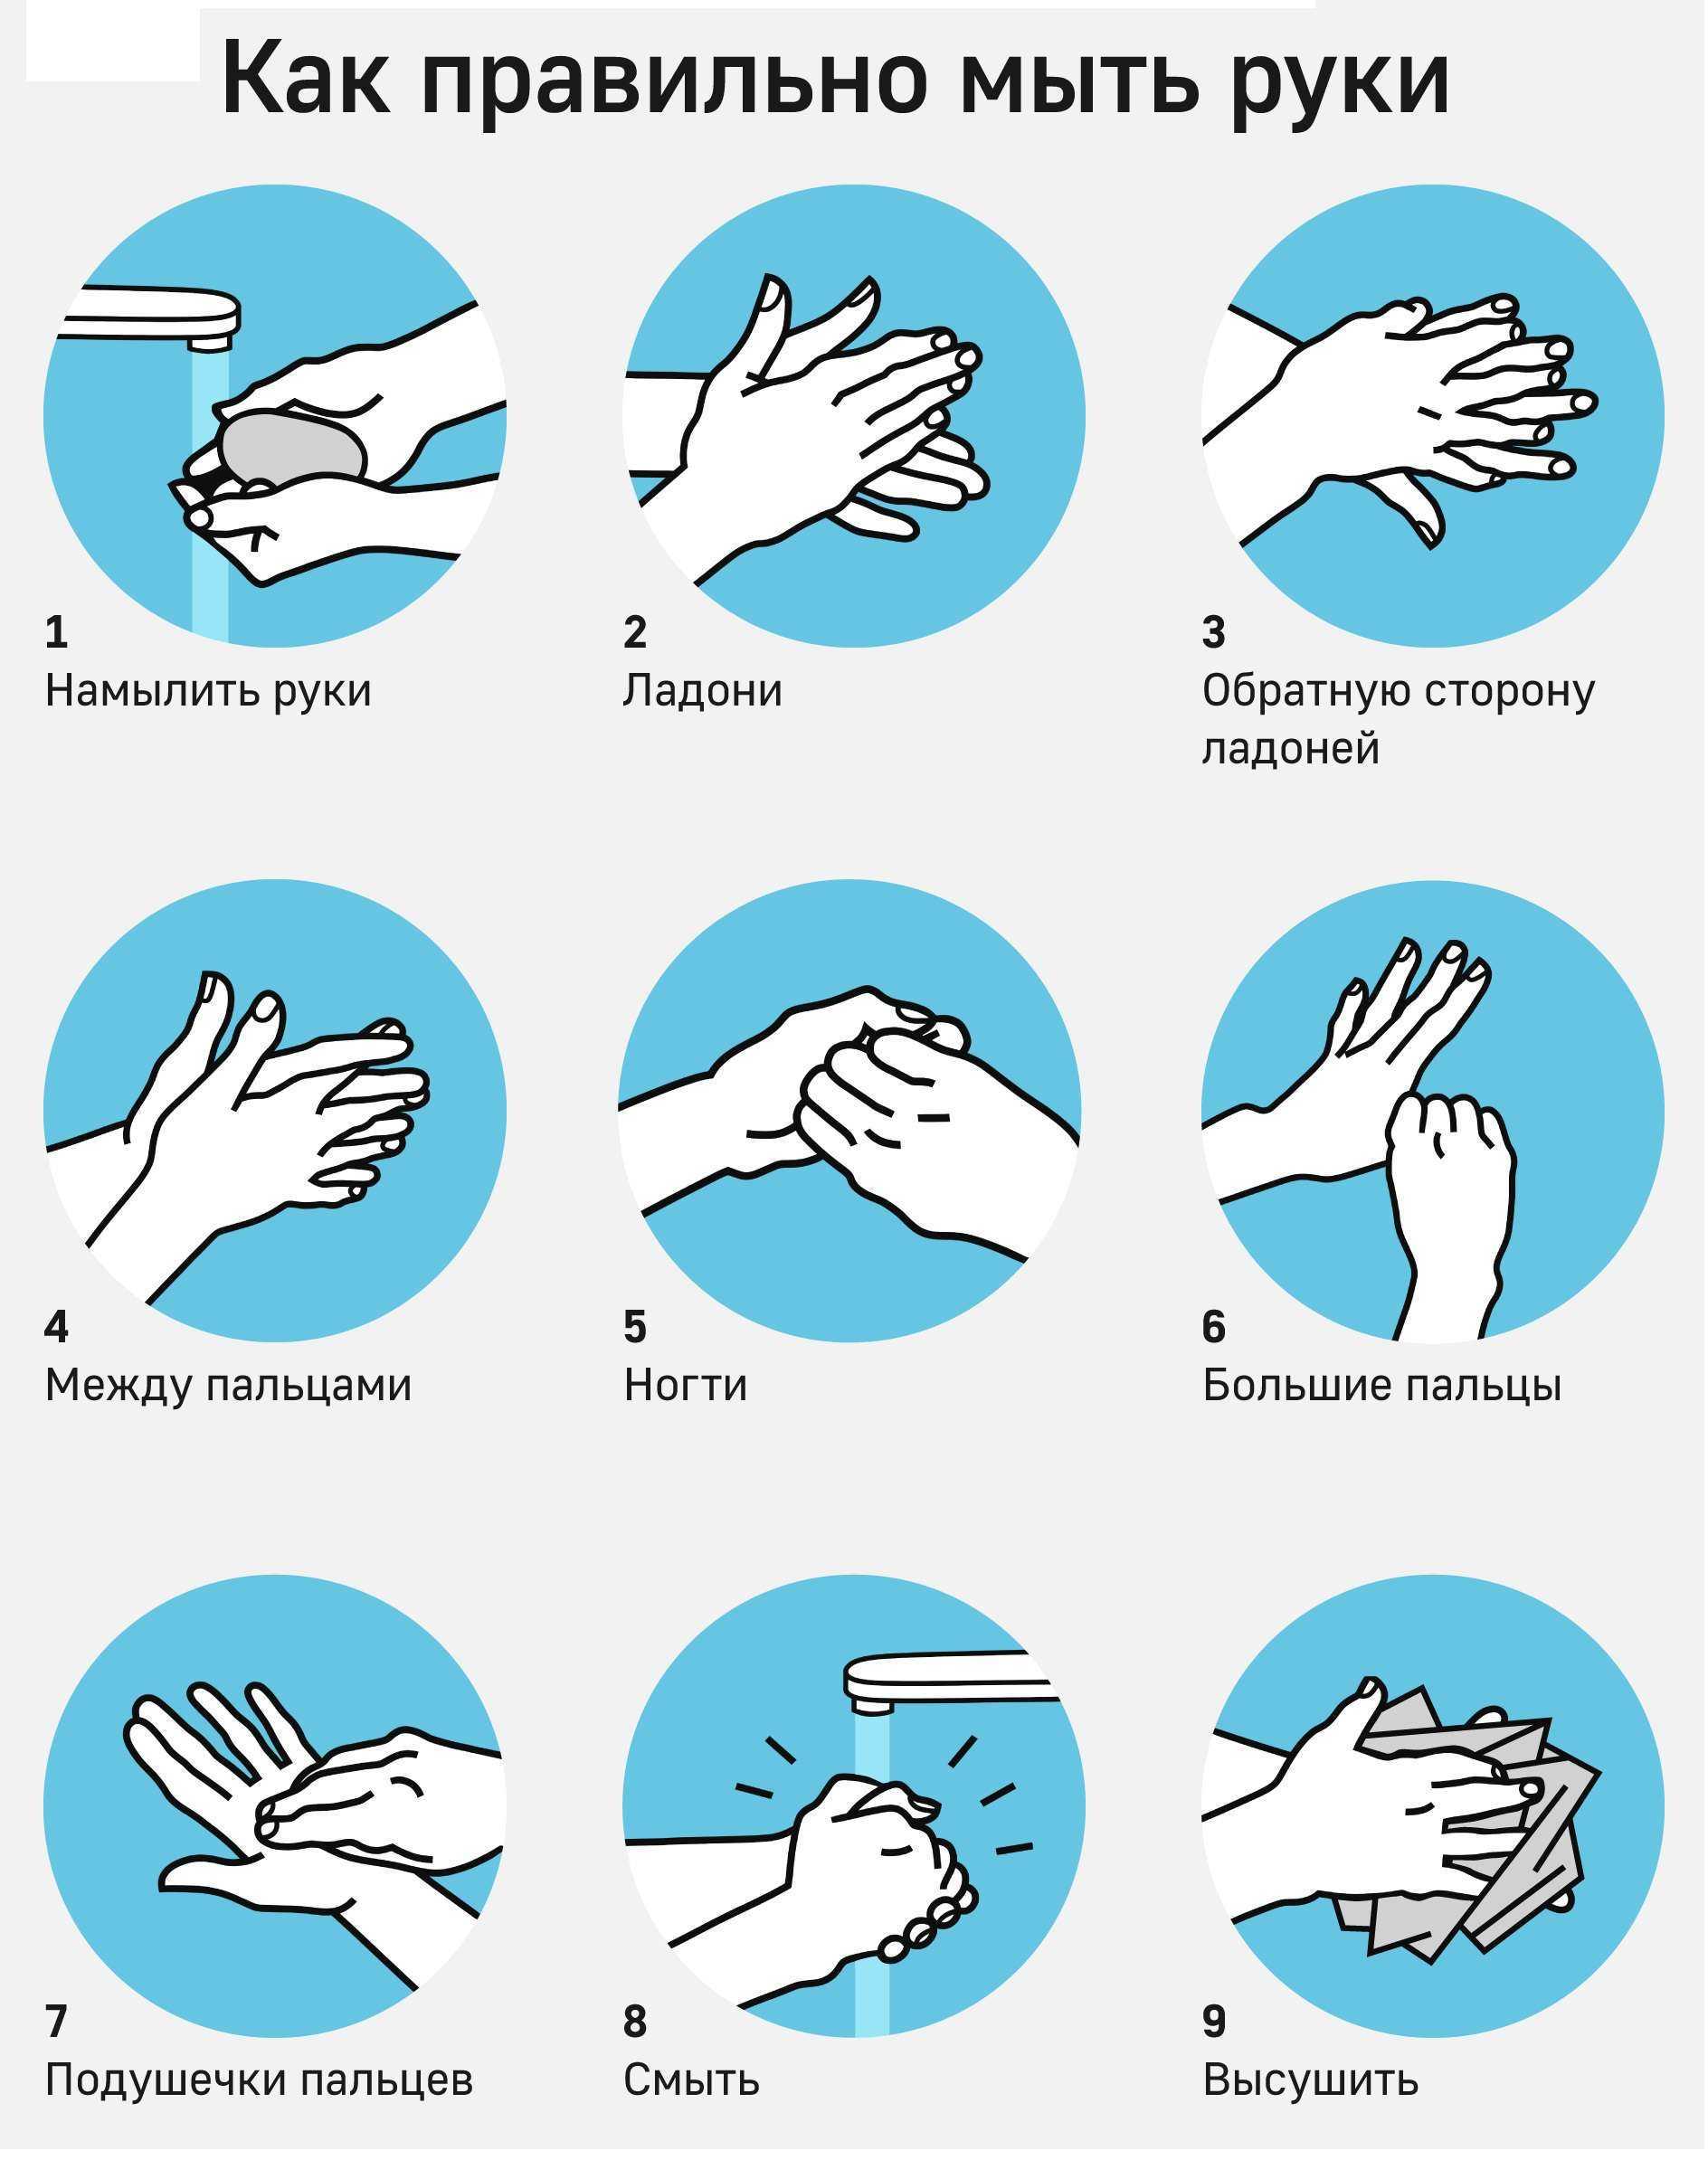 Как принимать душ (с иллюстрациями) - wikihow